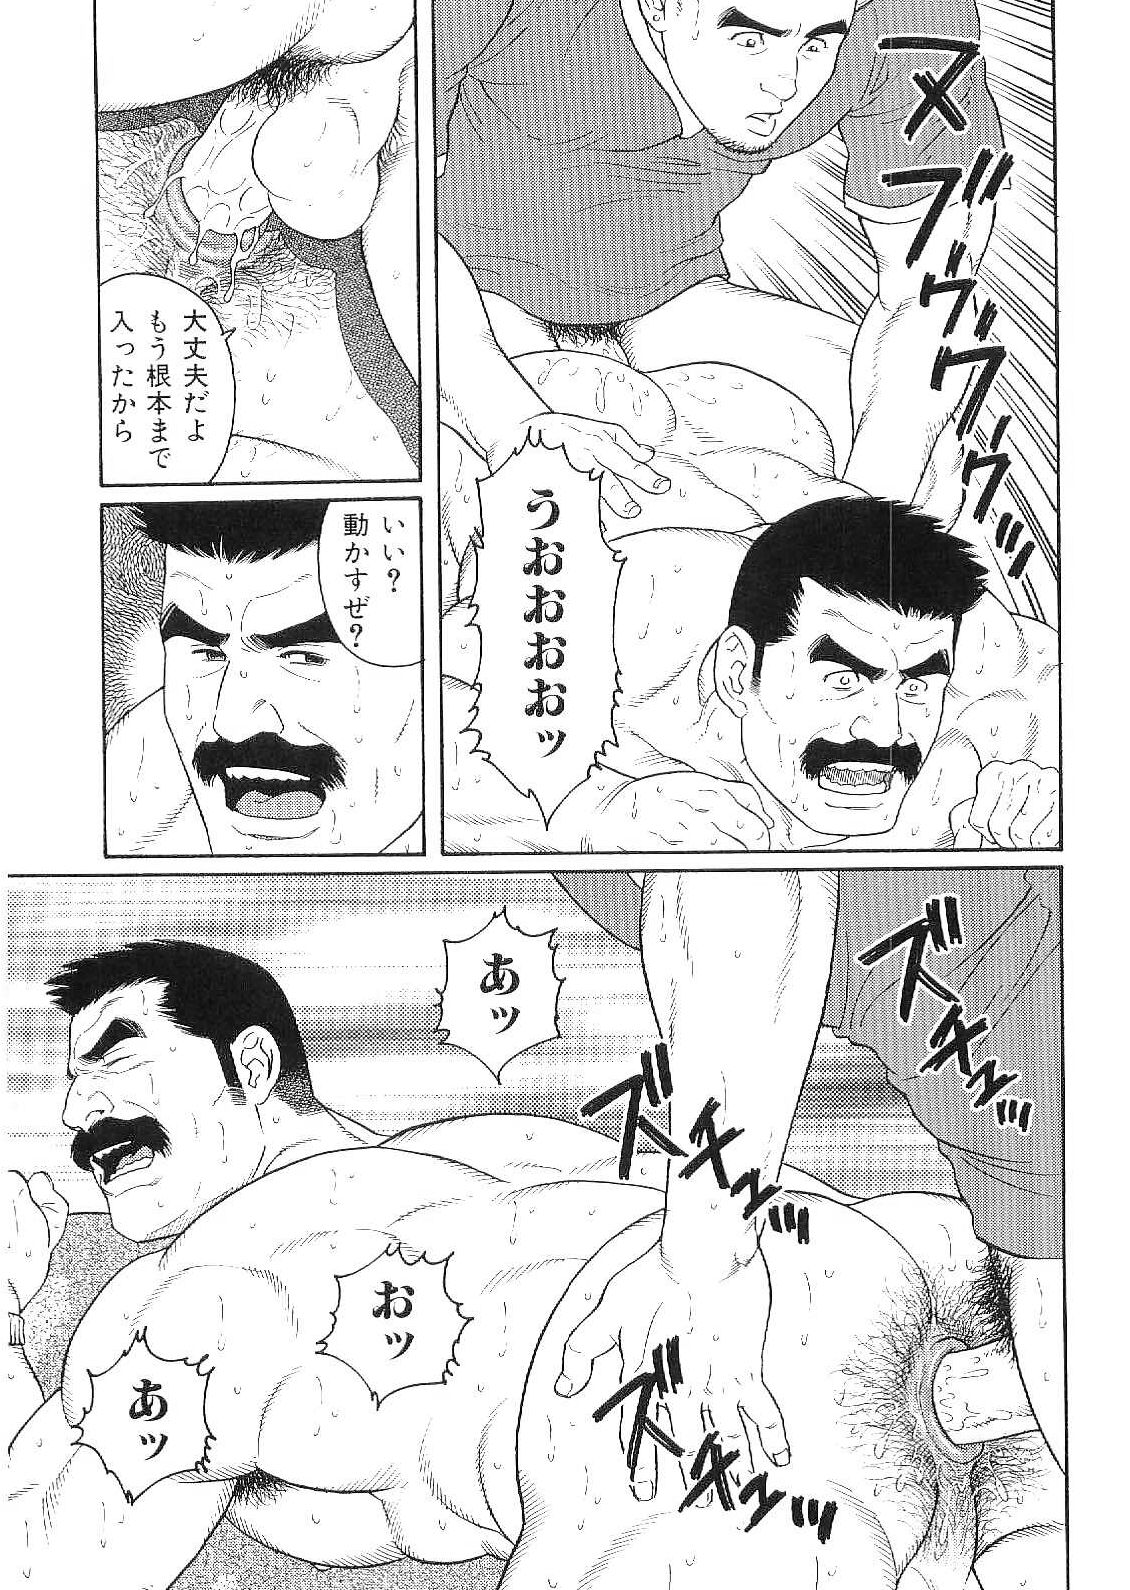 [アンソロジー] 筋肉男 Vol.9